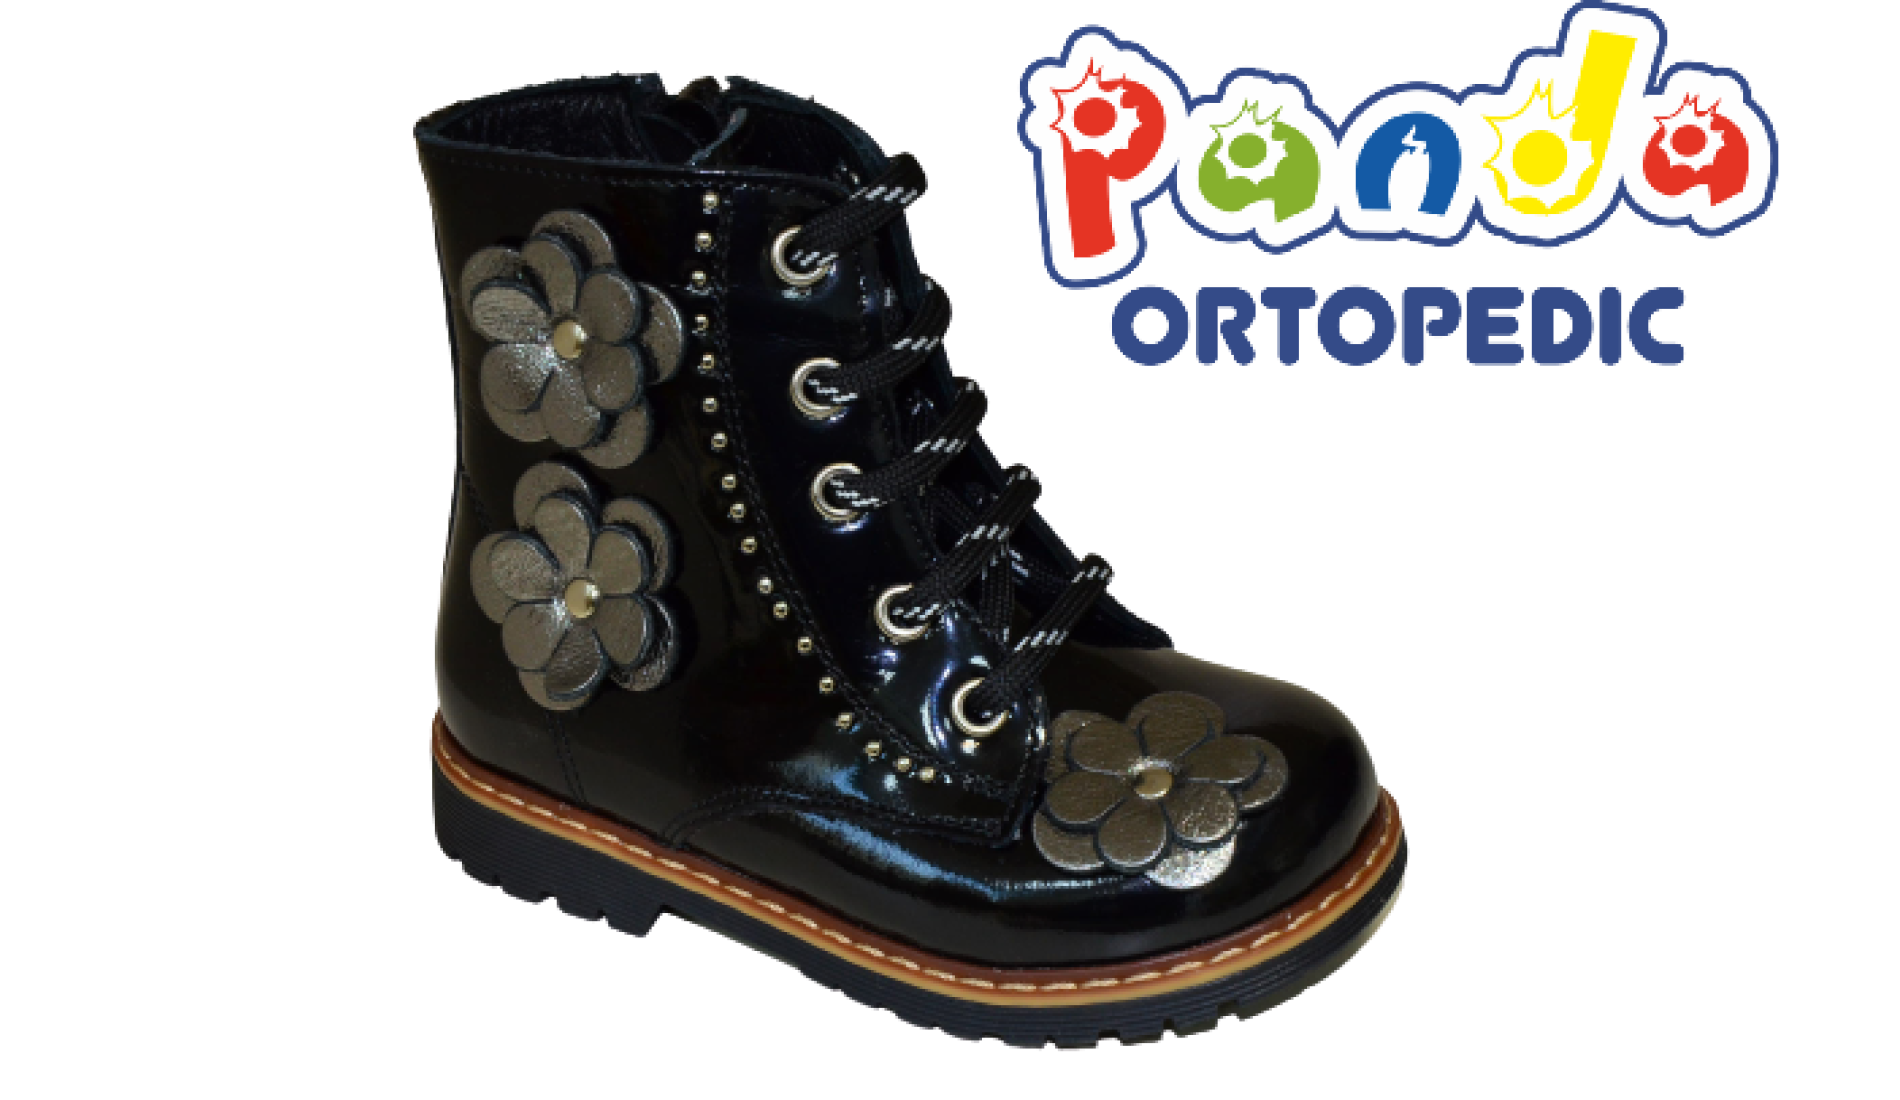 Ботинки осенние Панда, купить не дорого детскую обувь в Калининграде,кожаная ортопедическая стелька с супинатором, антивальгус.